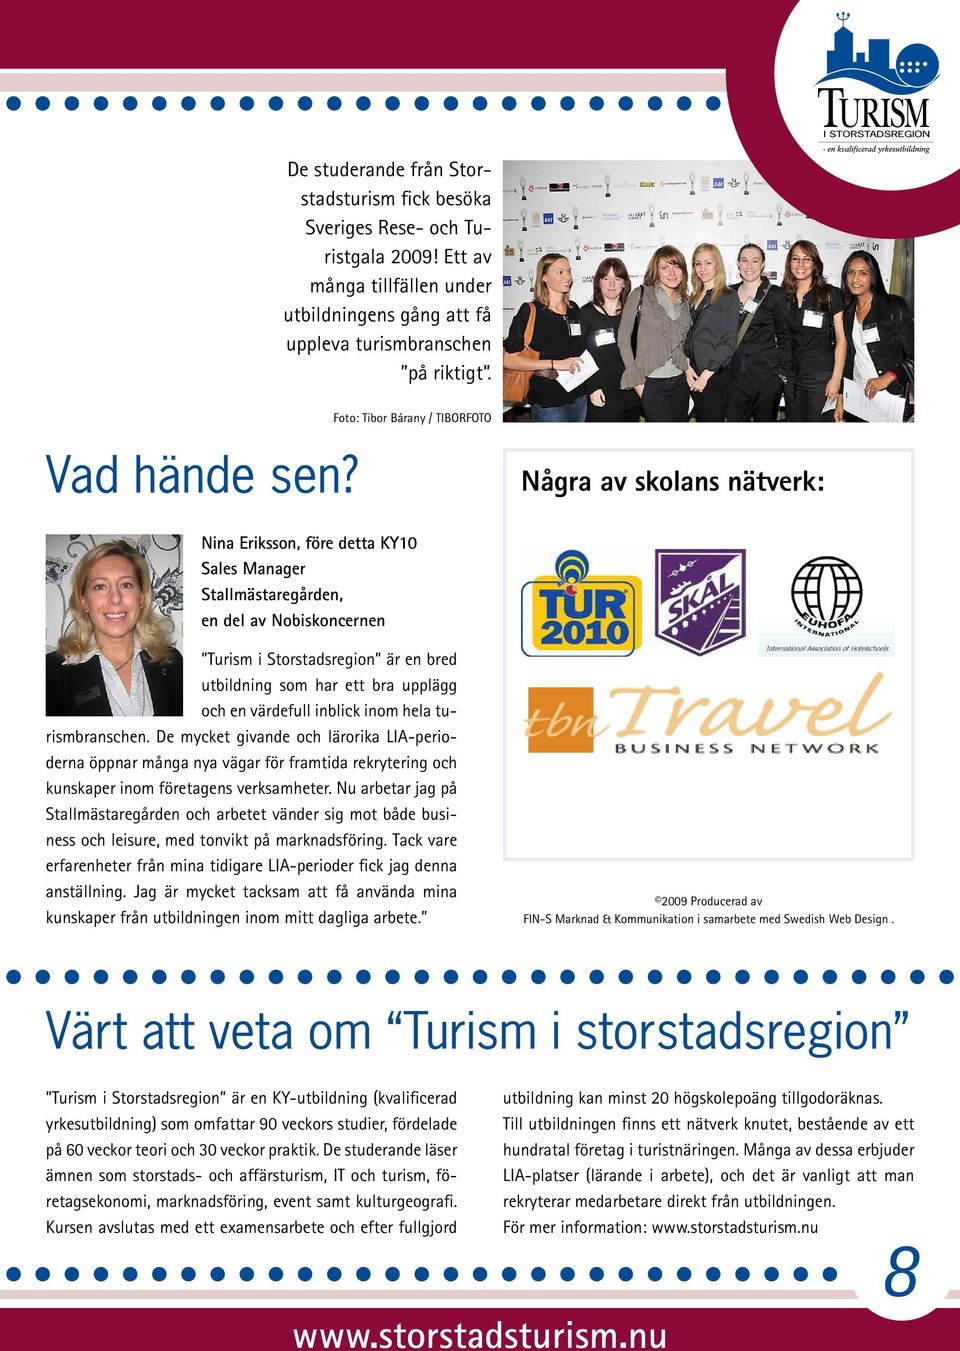 Några av skolans nätverk: Nina Eriksson, före detta KY10 Sales Manager Stallmästaregården, en del av Nobiskoncernen Turism i Storstadsregion är en bred utbildning som har ett bra upplägg och en